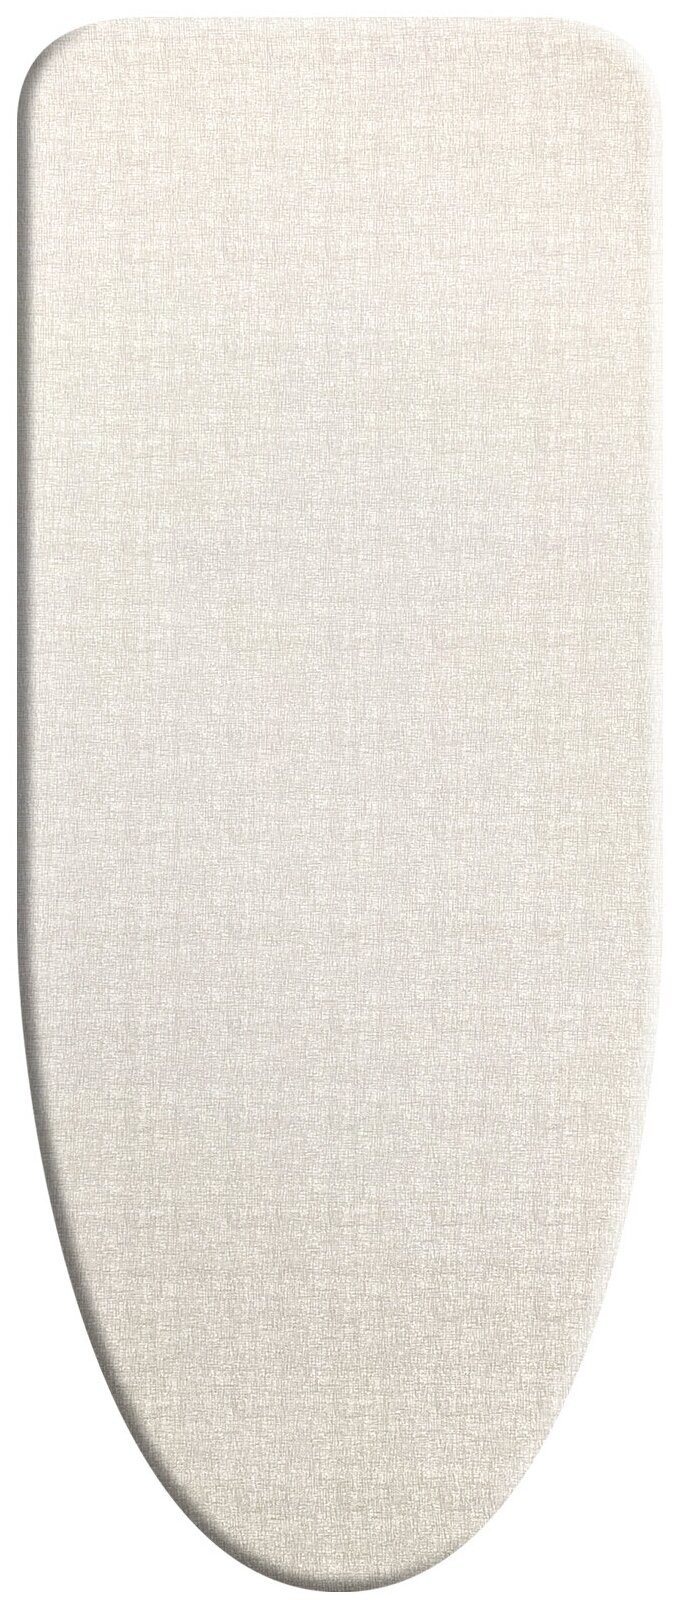 Чехол для гладильной доски, размер 145*55 см (XL), GREY LINEN